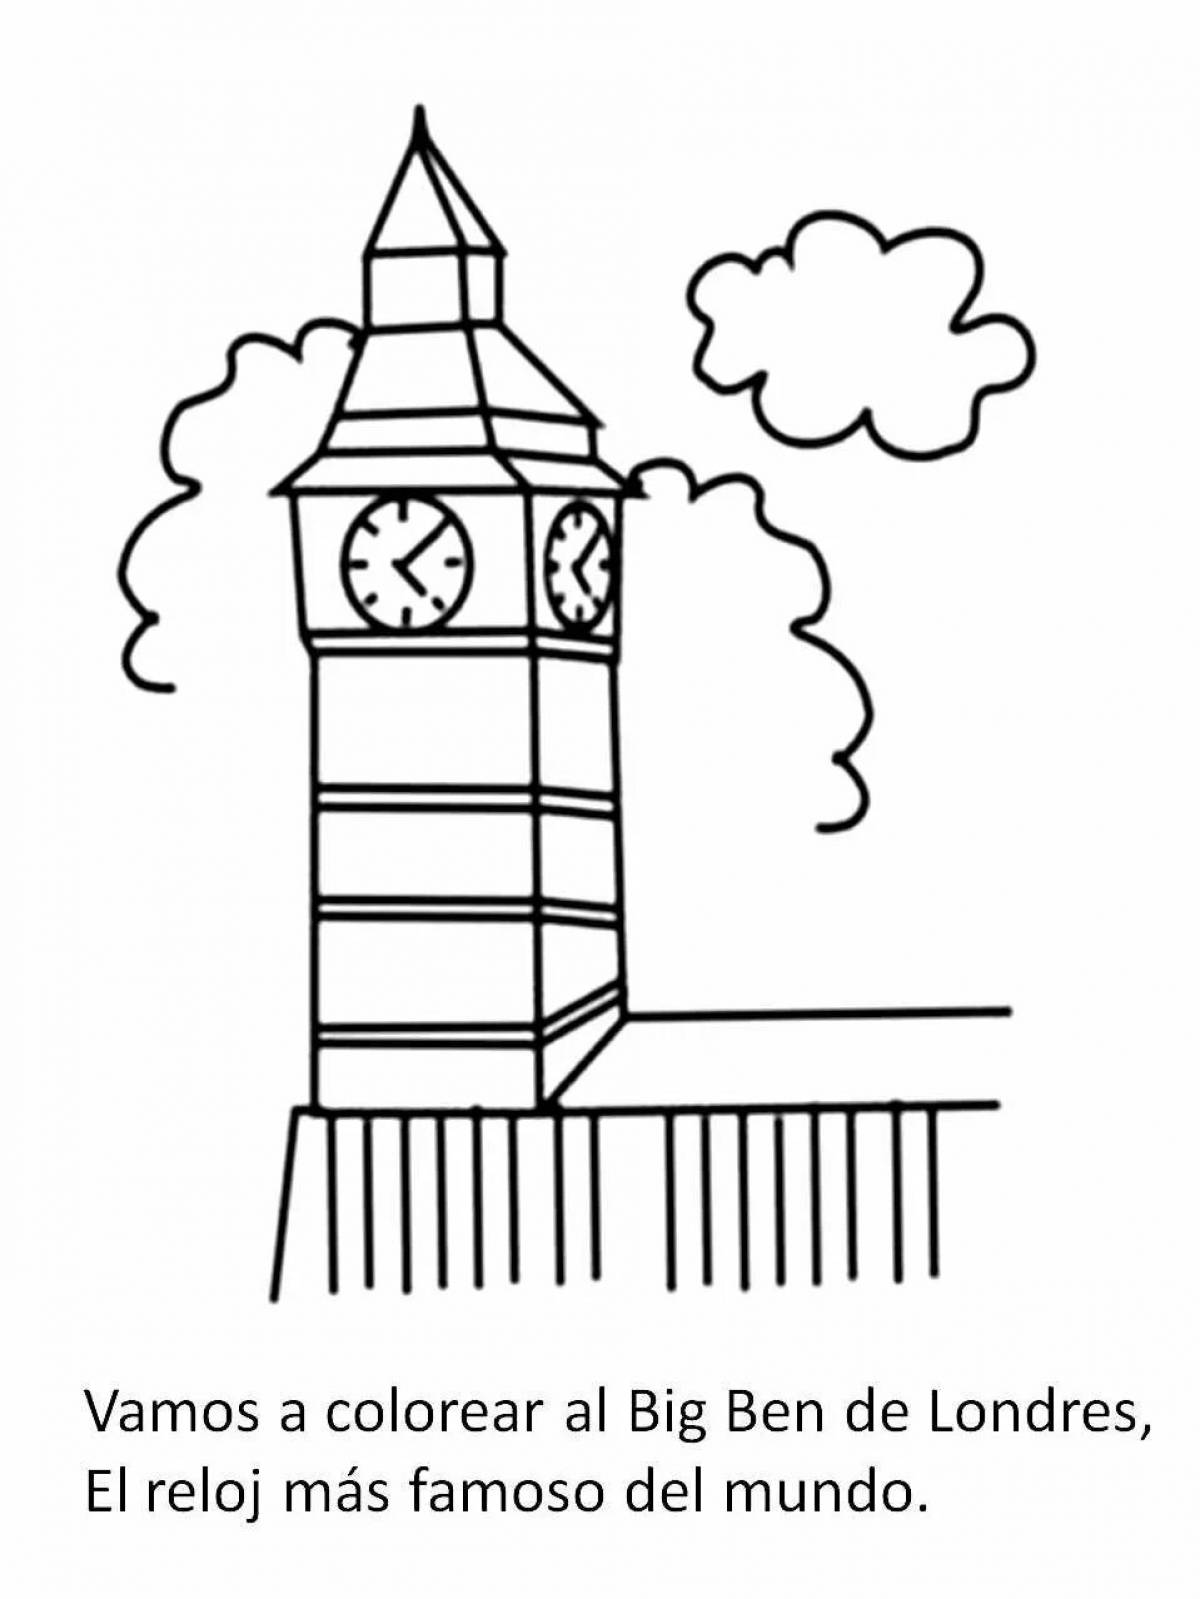 Башня Биг Бен рисунок